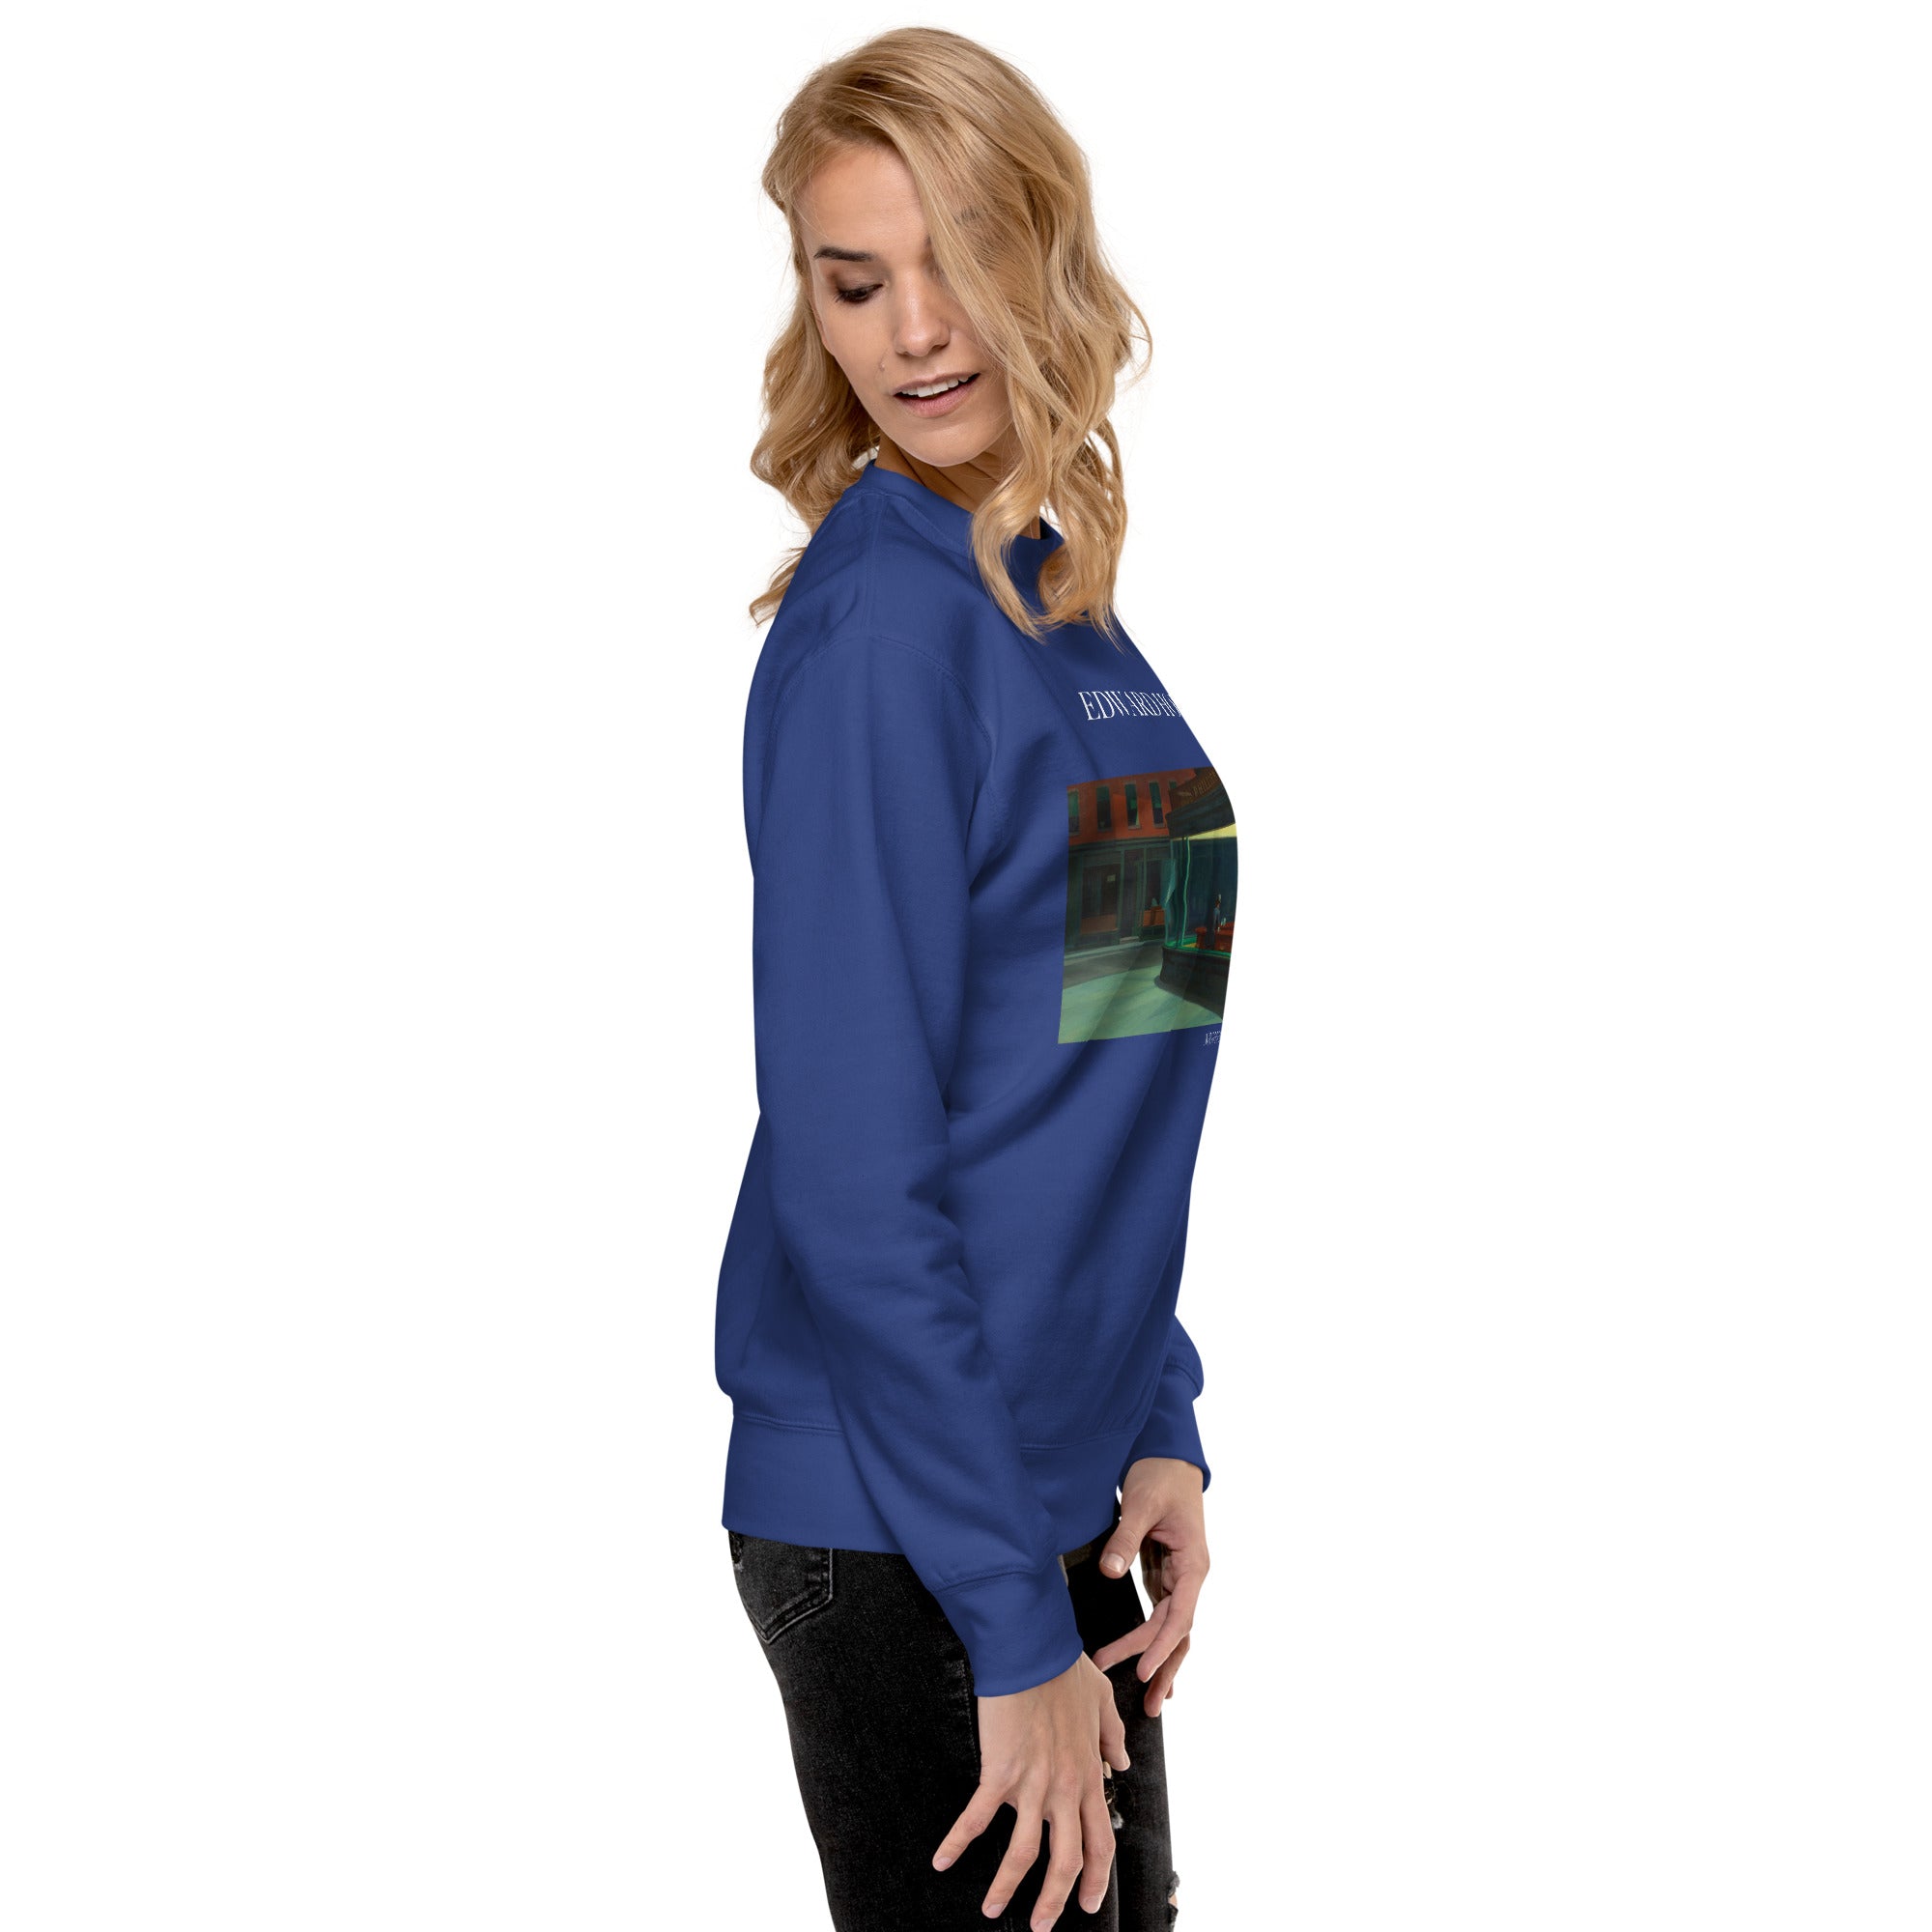 Edward Hopper 'Nighthawks' Famous Painting Sweatshirt | Unisex Premium Sweatshirt